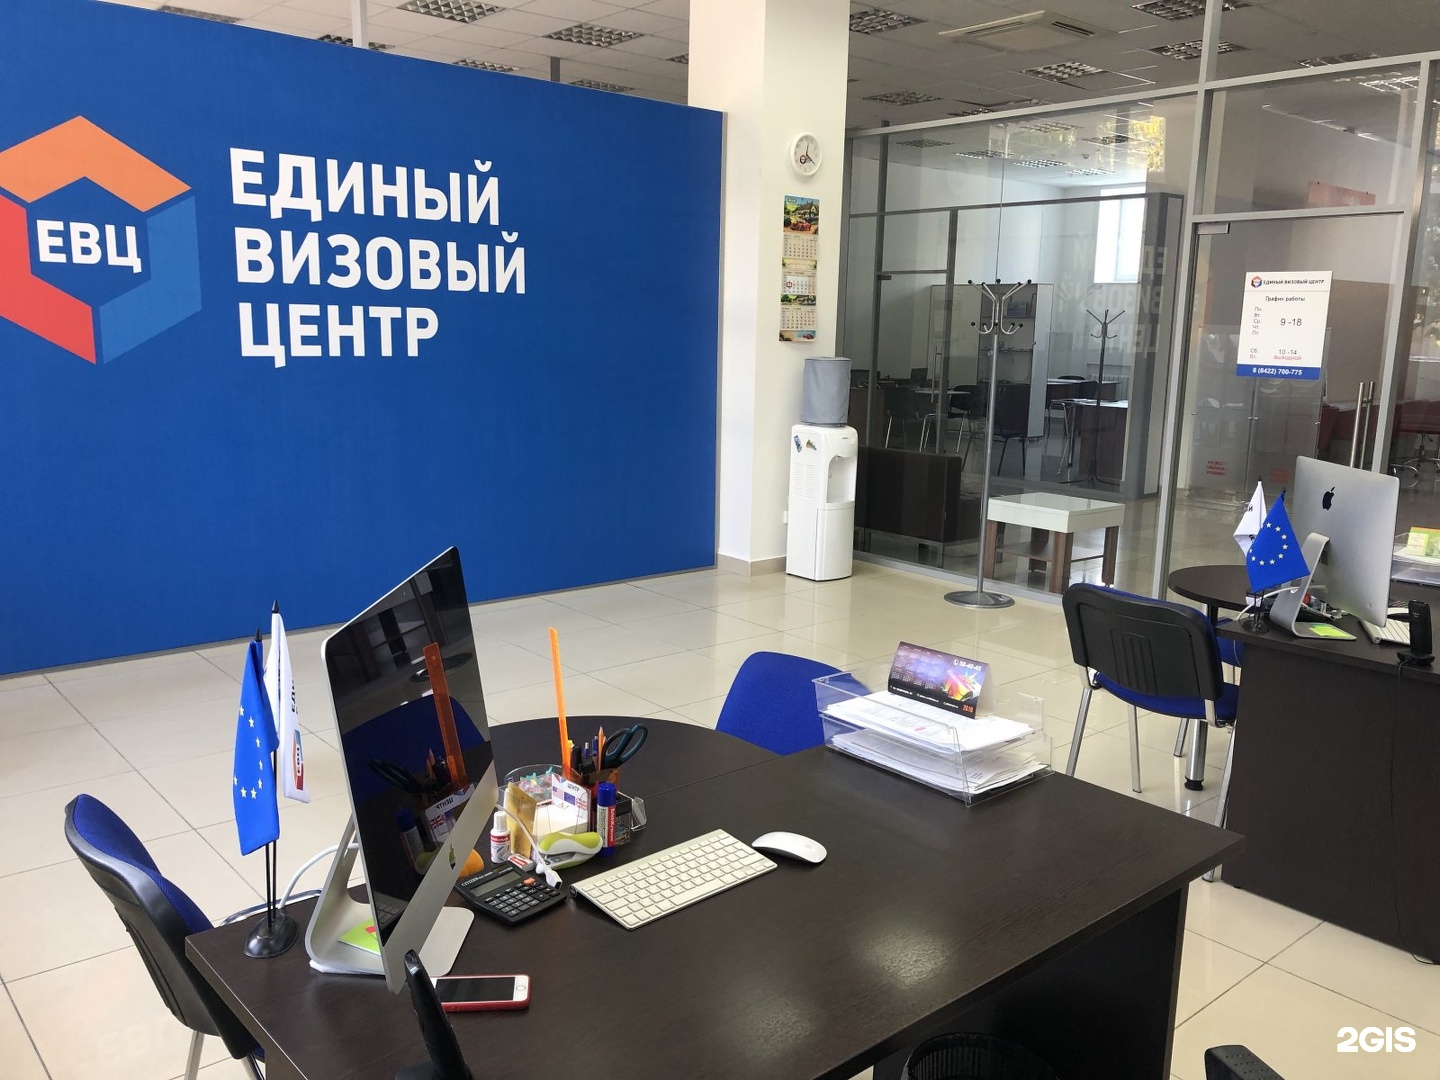 Визовый центр в москве телефон